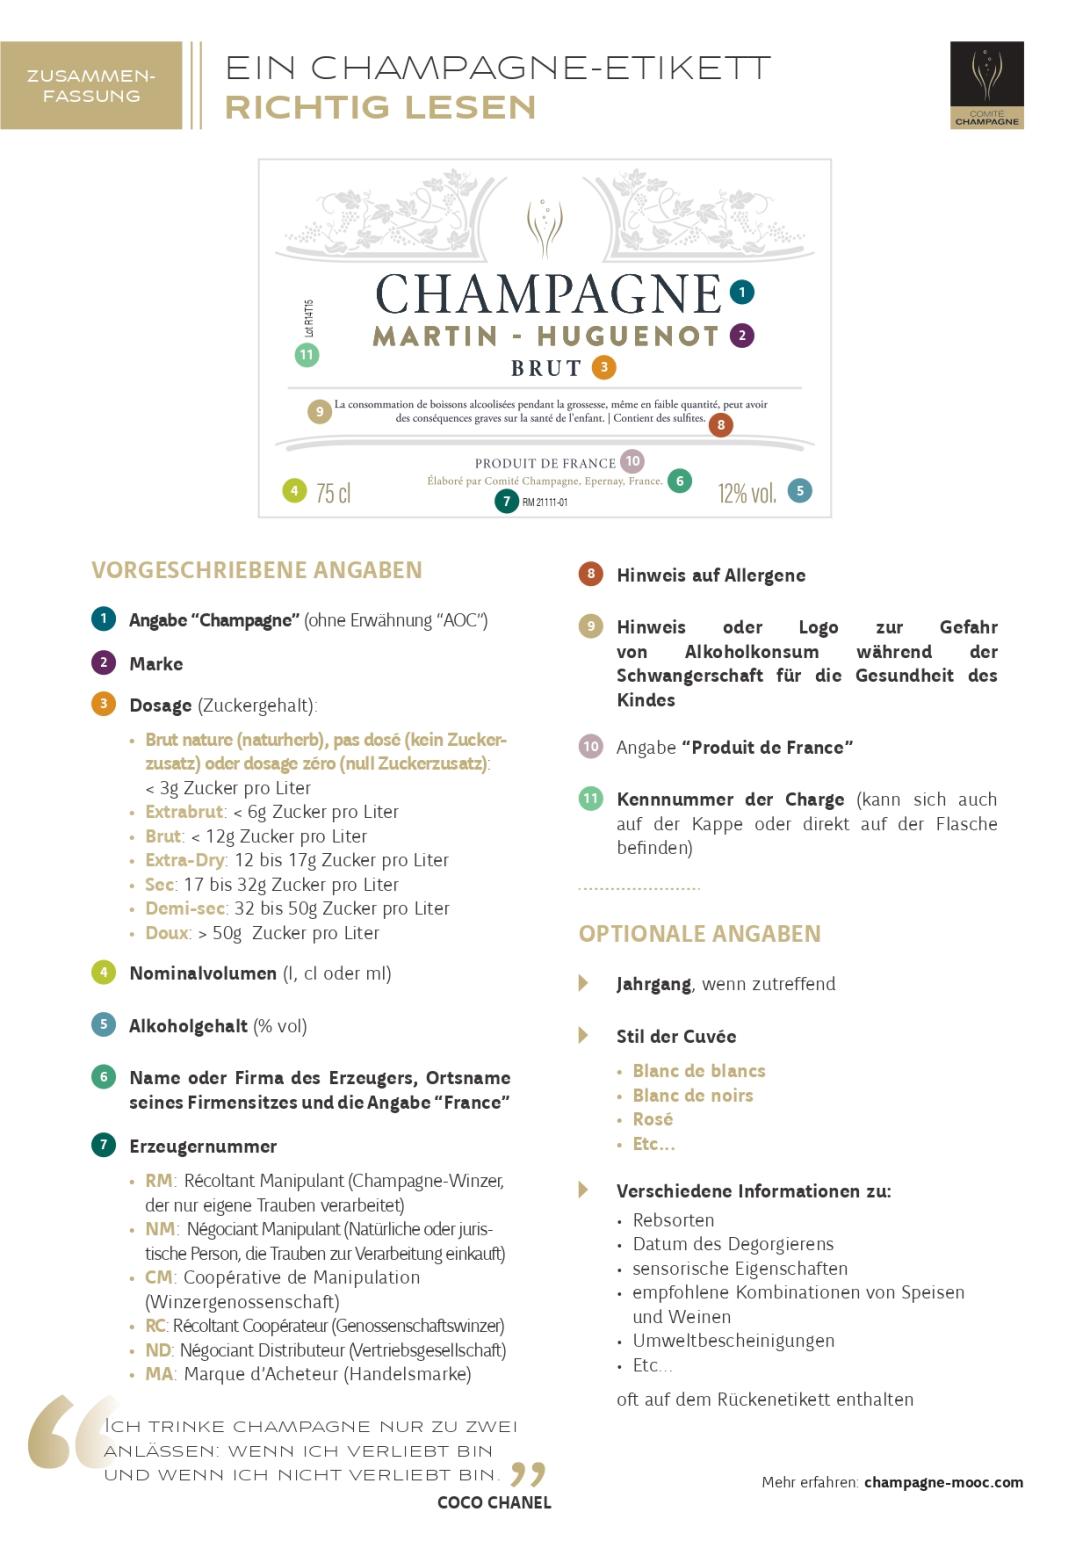 Ein Champagne Etikett Richtig Lesen